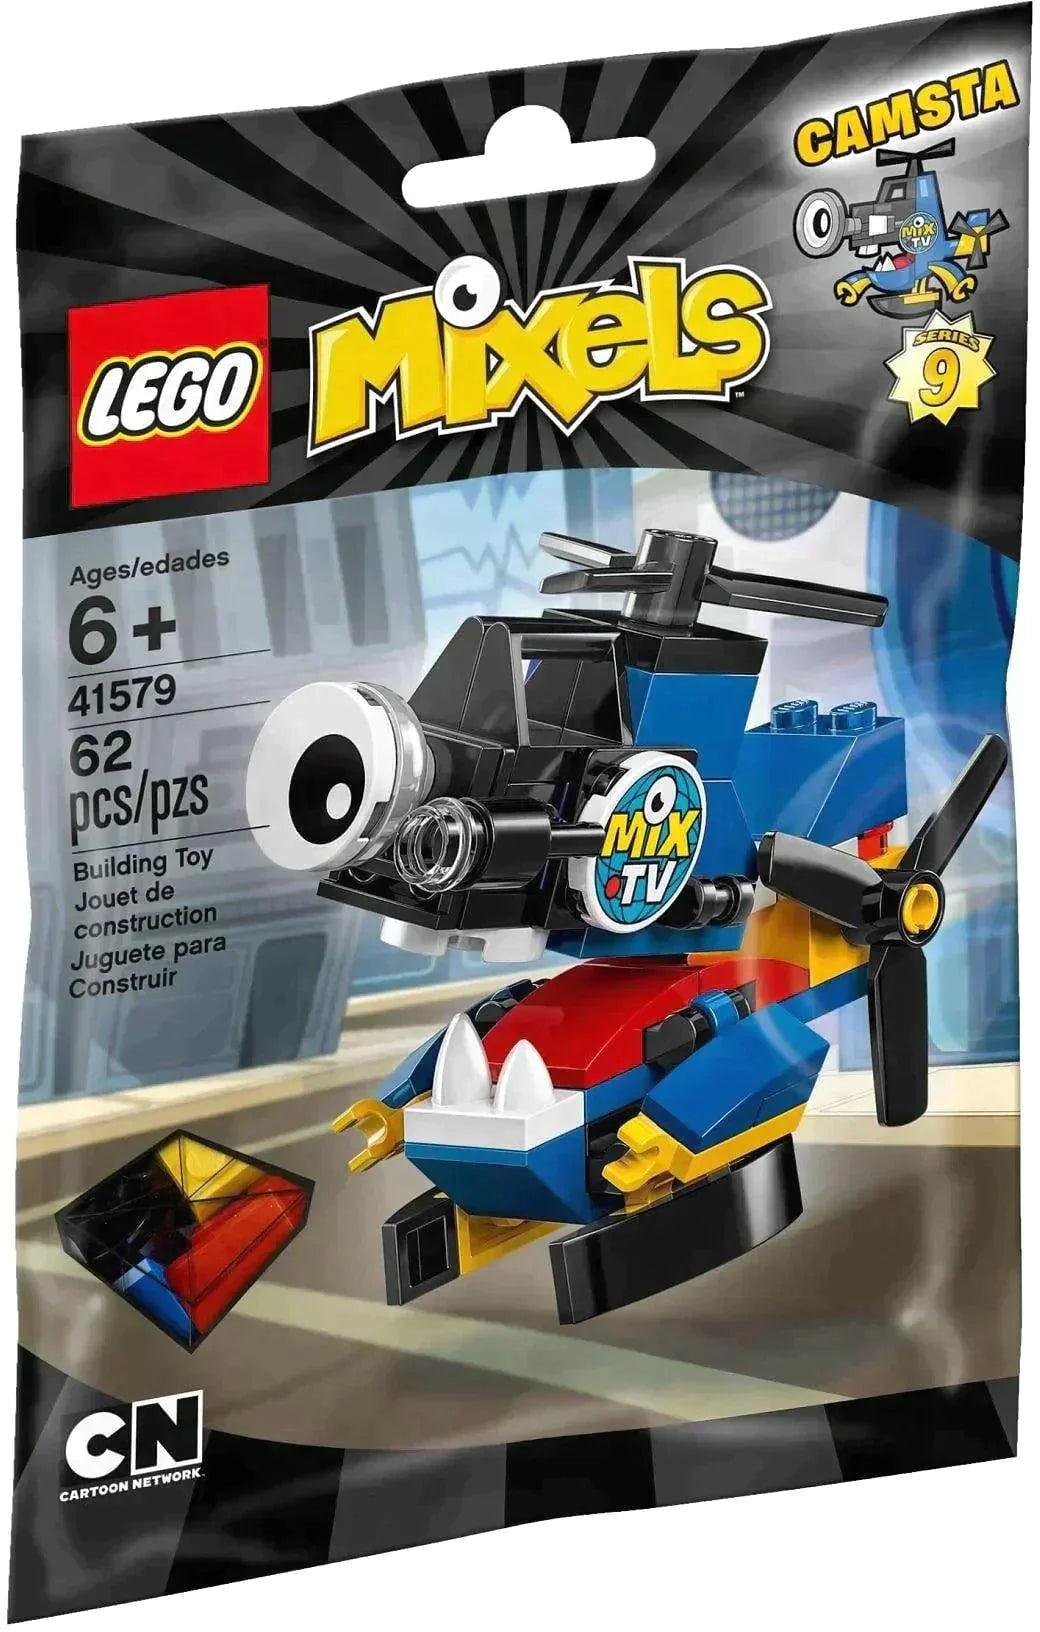 LEGO Mixels Camsta serie 9 41579 Mixels | 2TTOYS ✓ Official shop<br>